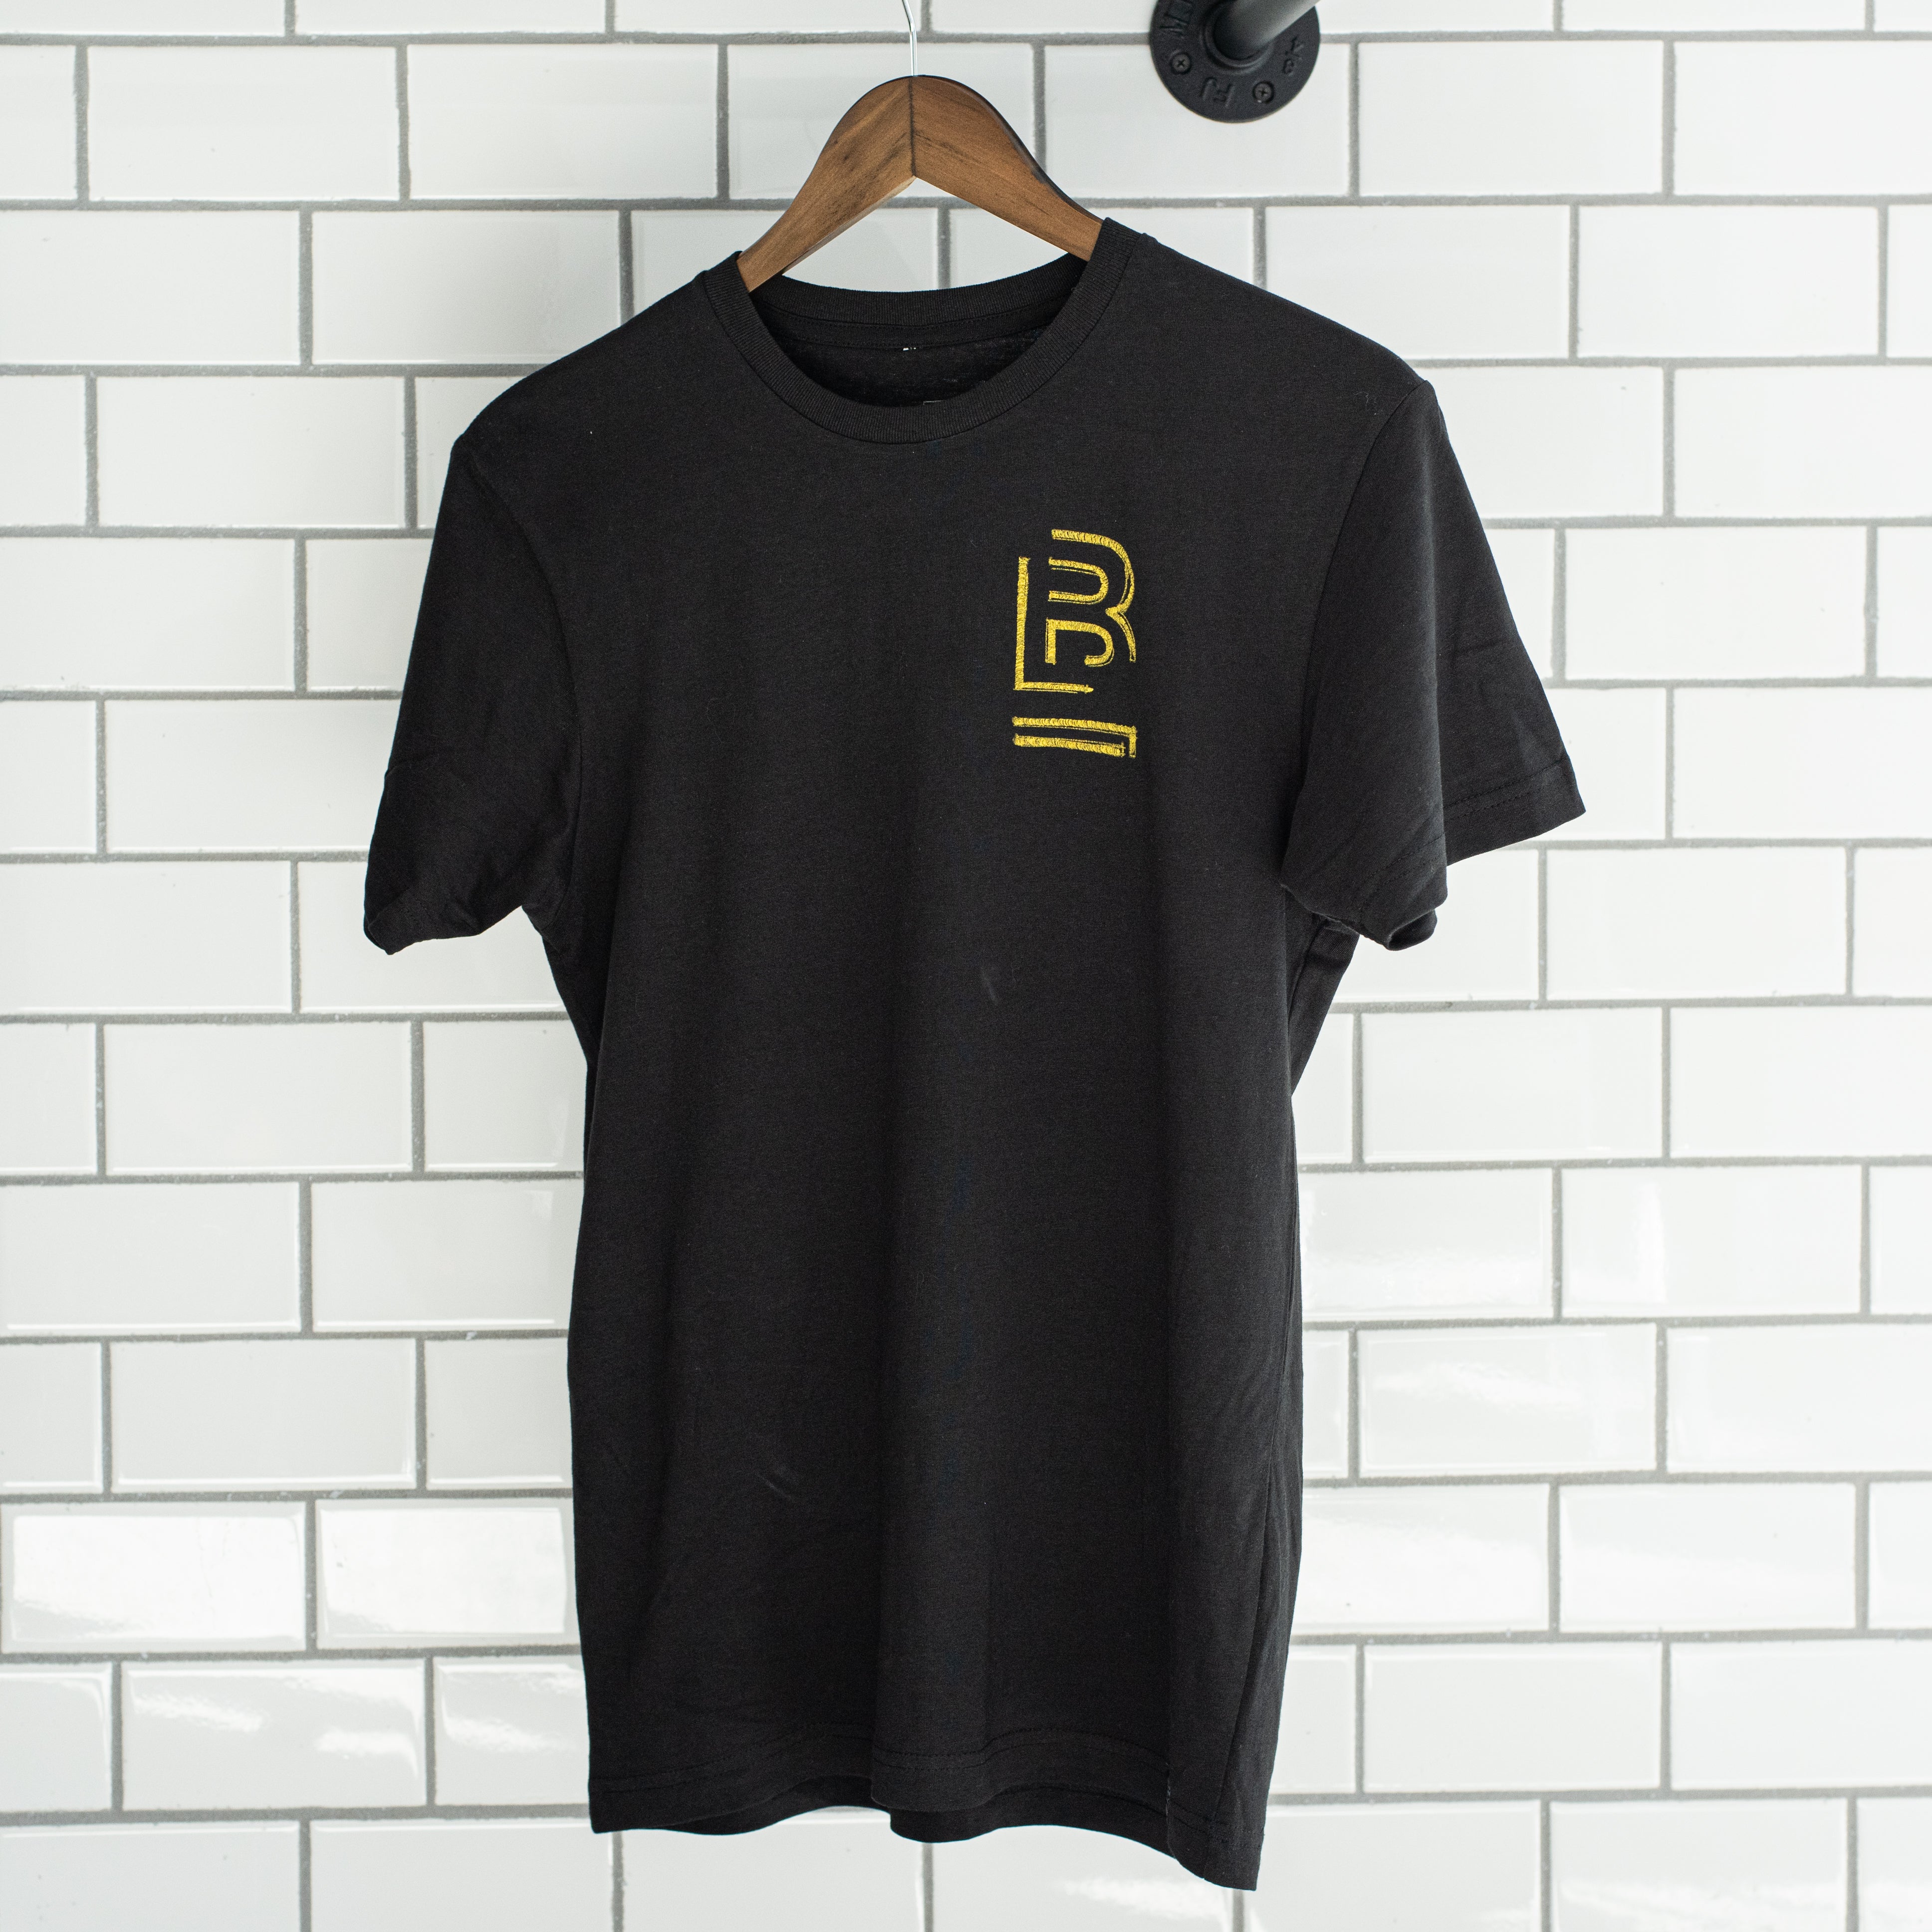 Blackwing "B" Sketch T-Shirt